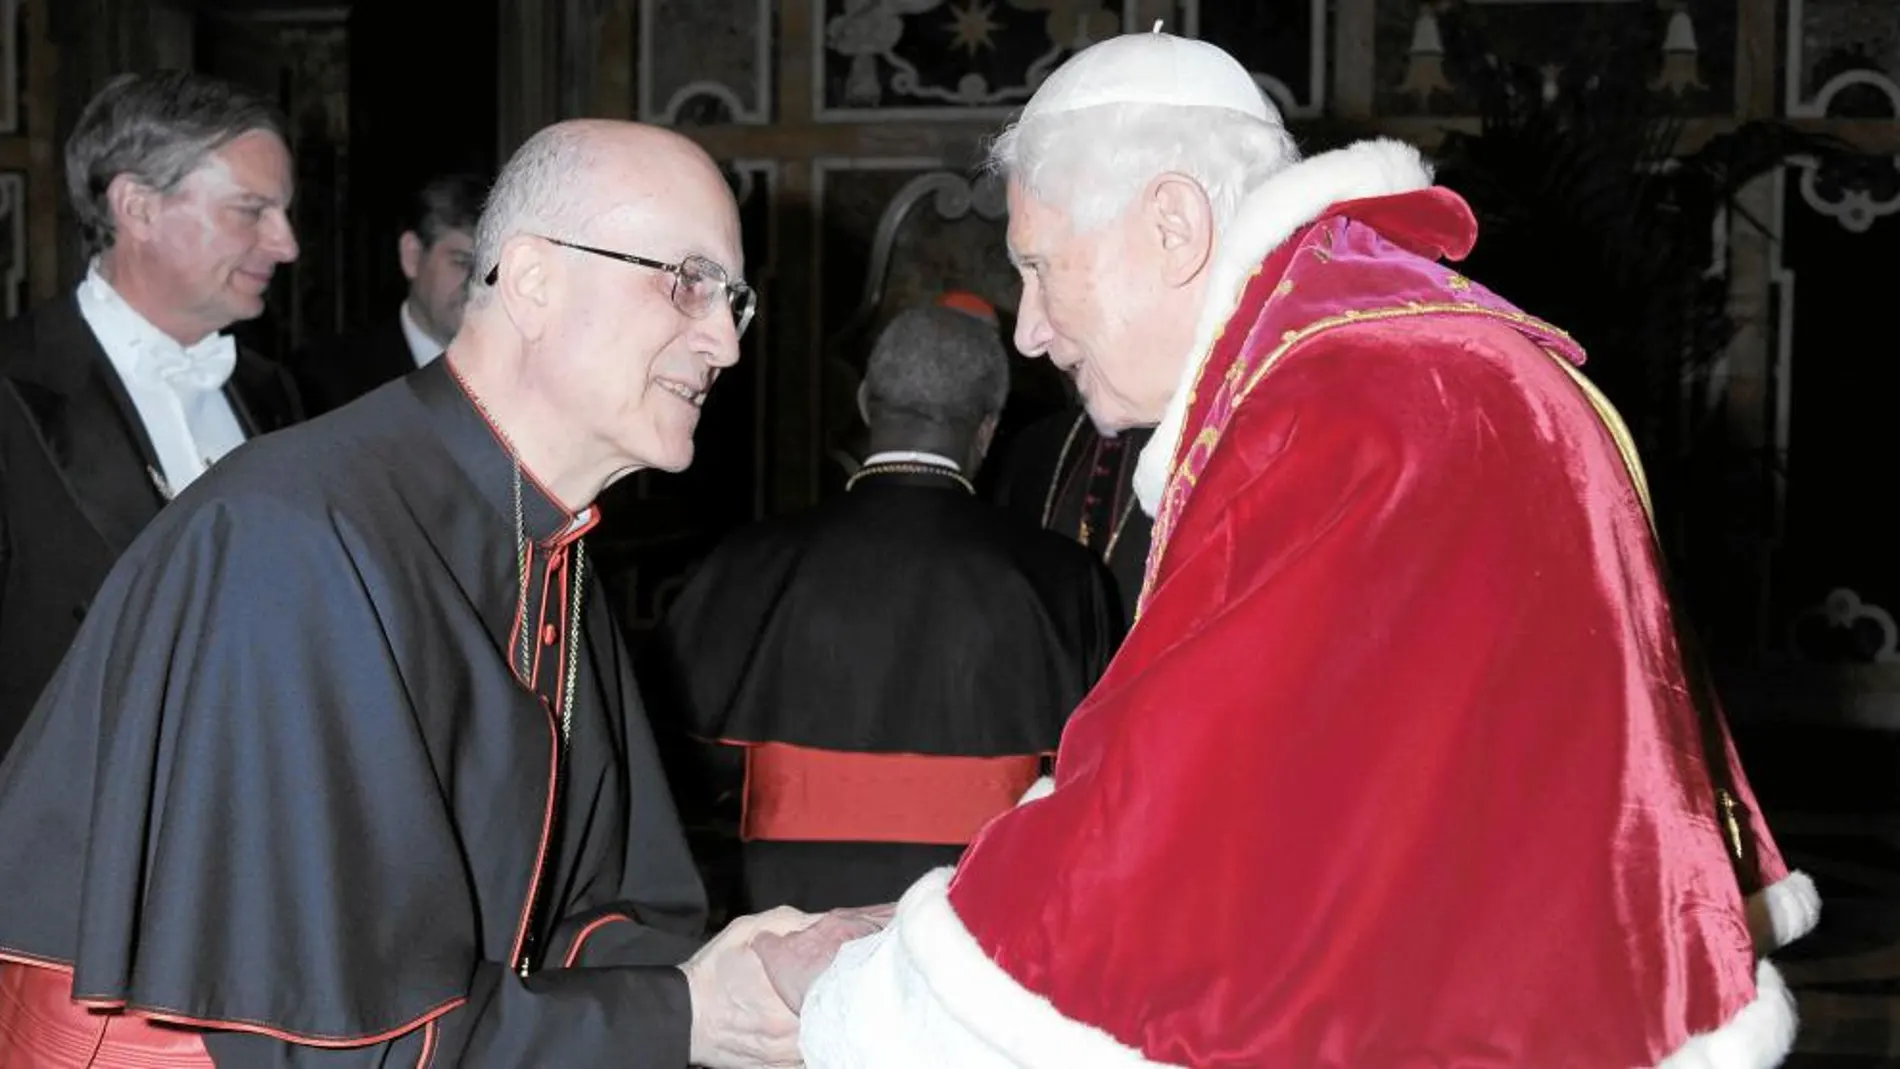 Benedicto XVI saluda afectivamente al cardenal Bertone en el acto de despedida que se celebró ayer con los purpurados de la Curia en la sala Clementina del Vaticano. Allí, Ratzinger se despidió uno a uno de todos los cardenales